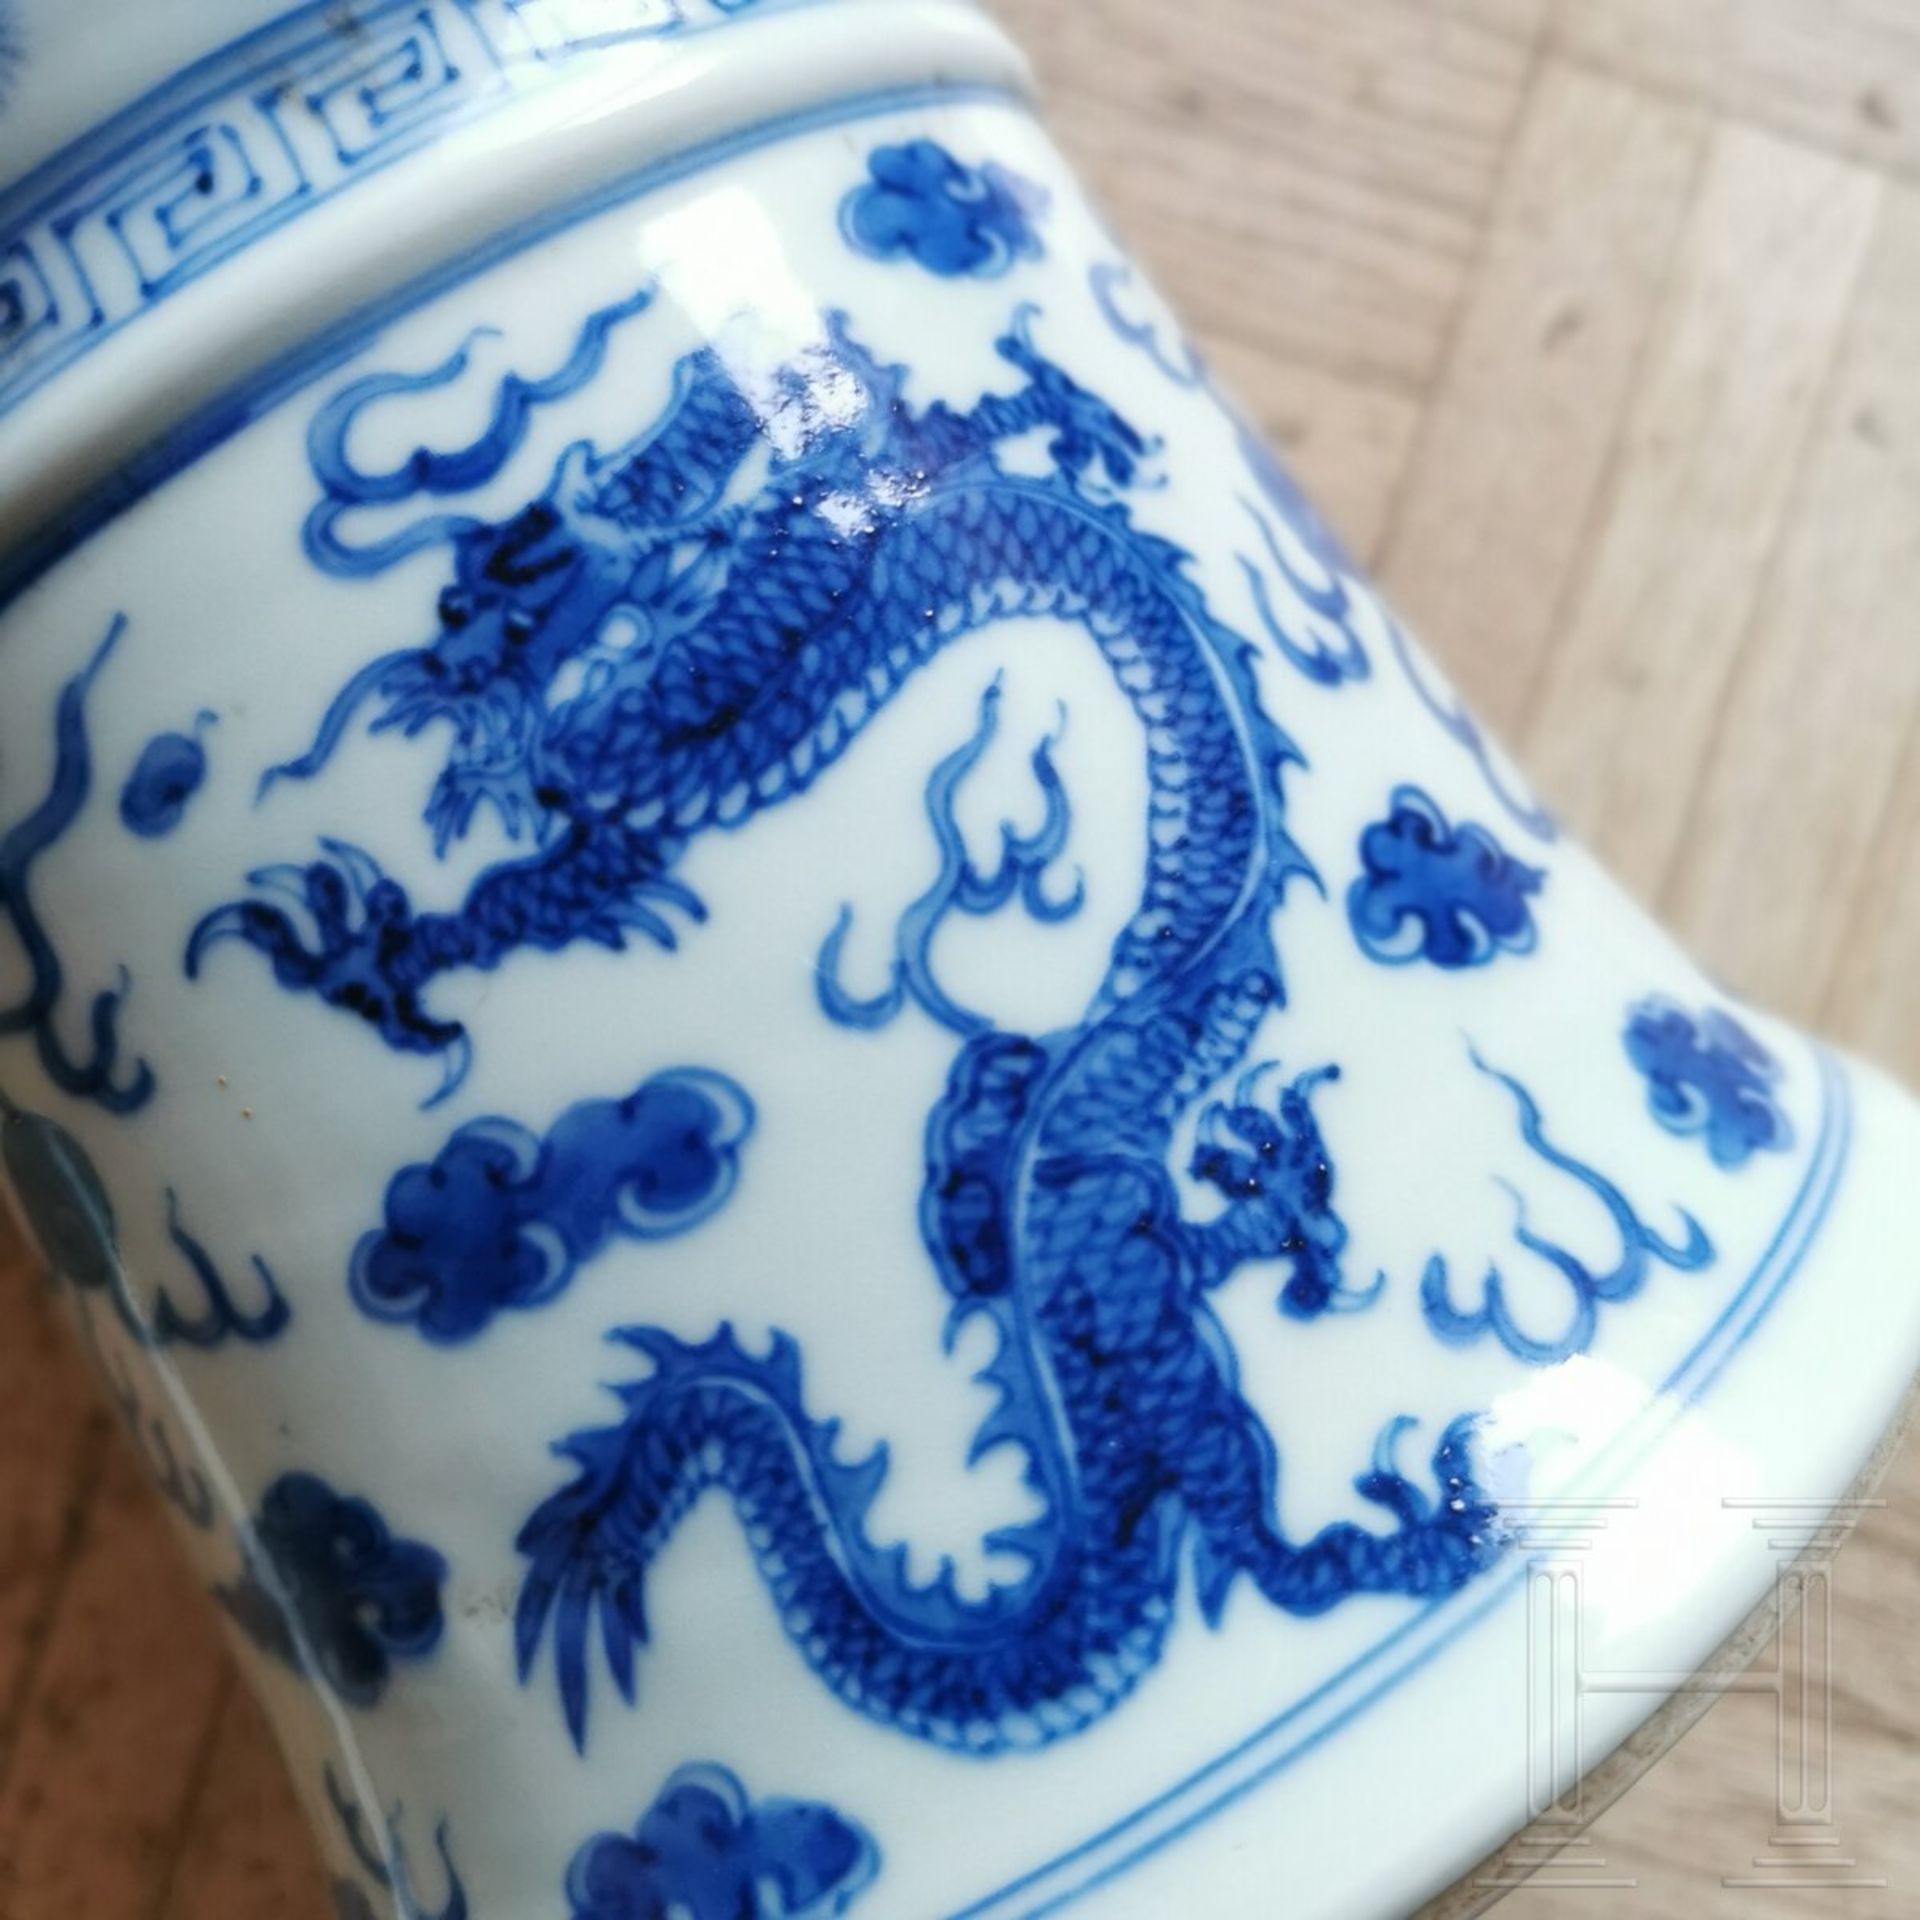 Große blau-weiße Gu-Vase mit Phönixen und Drachen, China, wohl Kangxi-Periode (Anfang 18. Jhdt.) - Bild 9 aus 9